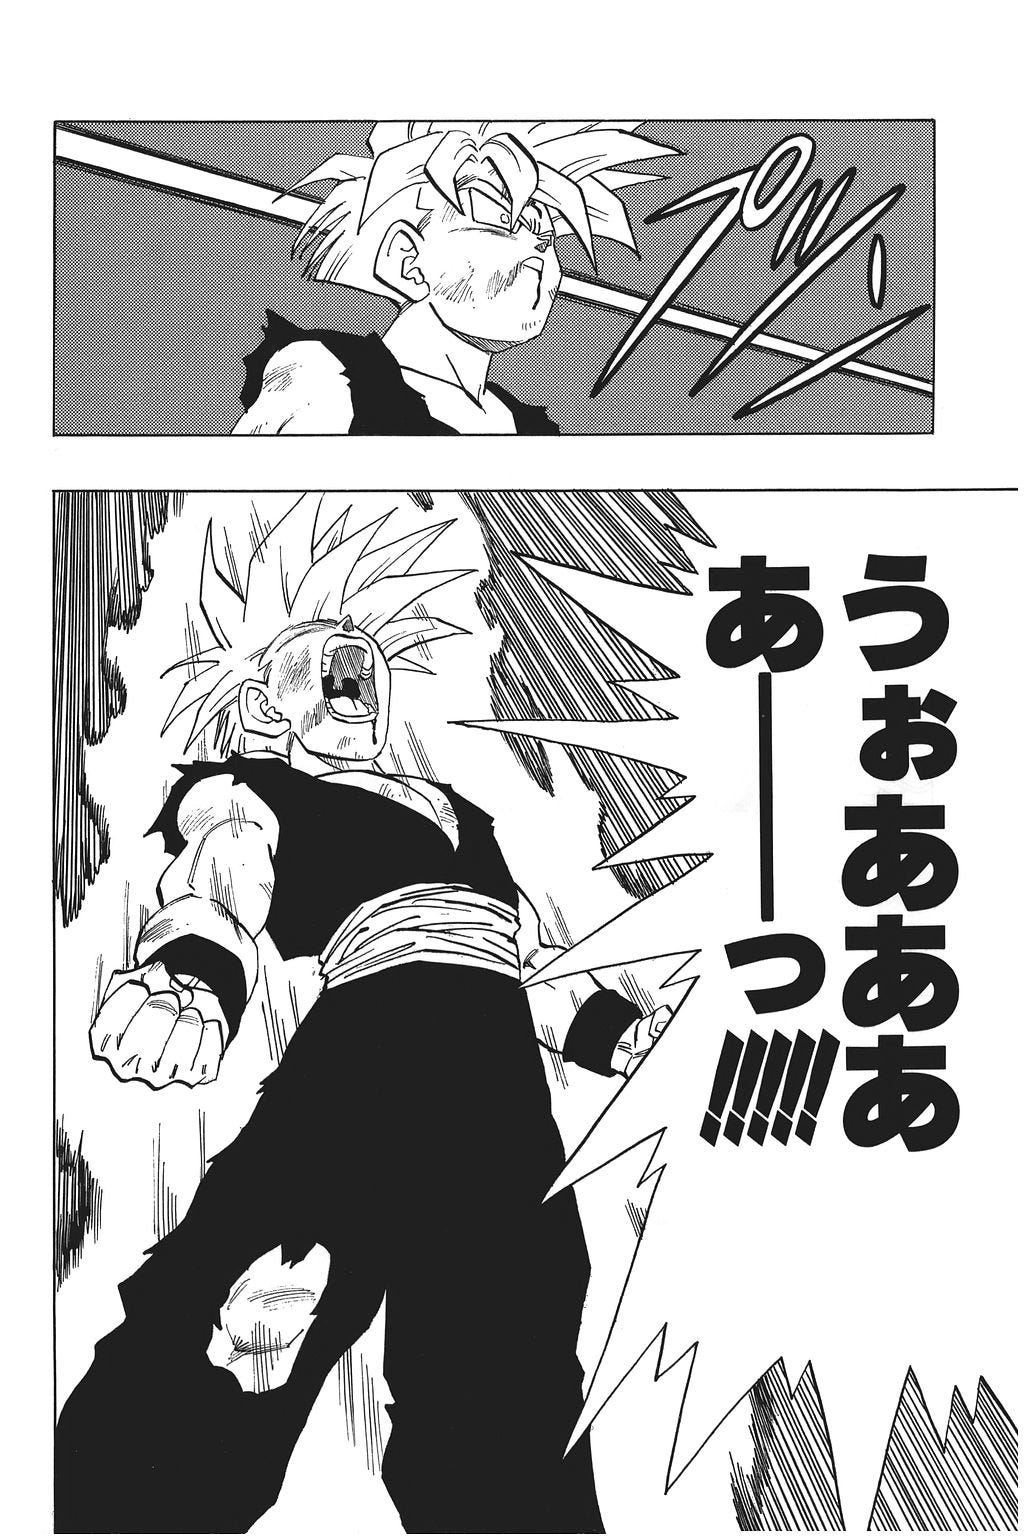 Goku Vegeta Gohan Freeza Super Saiyajin, desenho de linha, ângulo